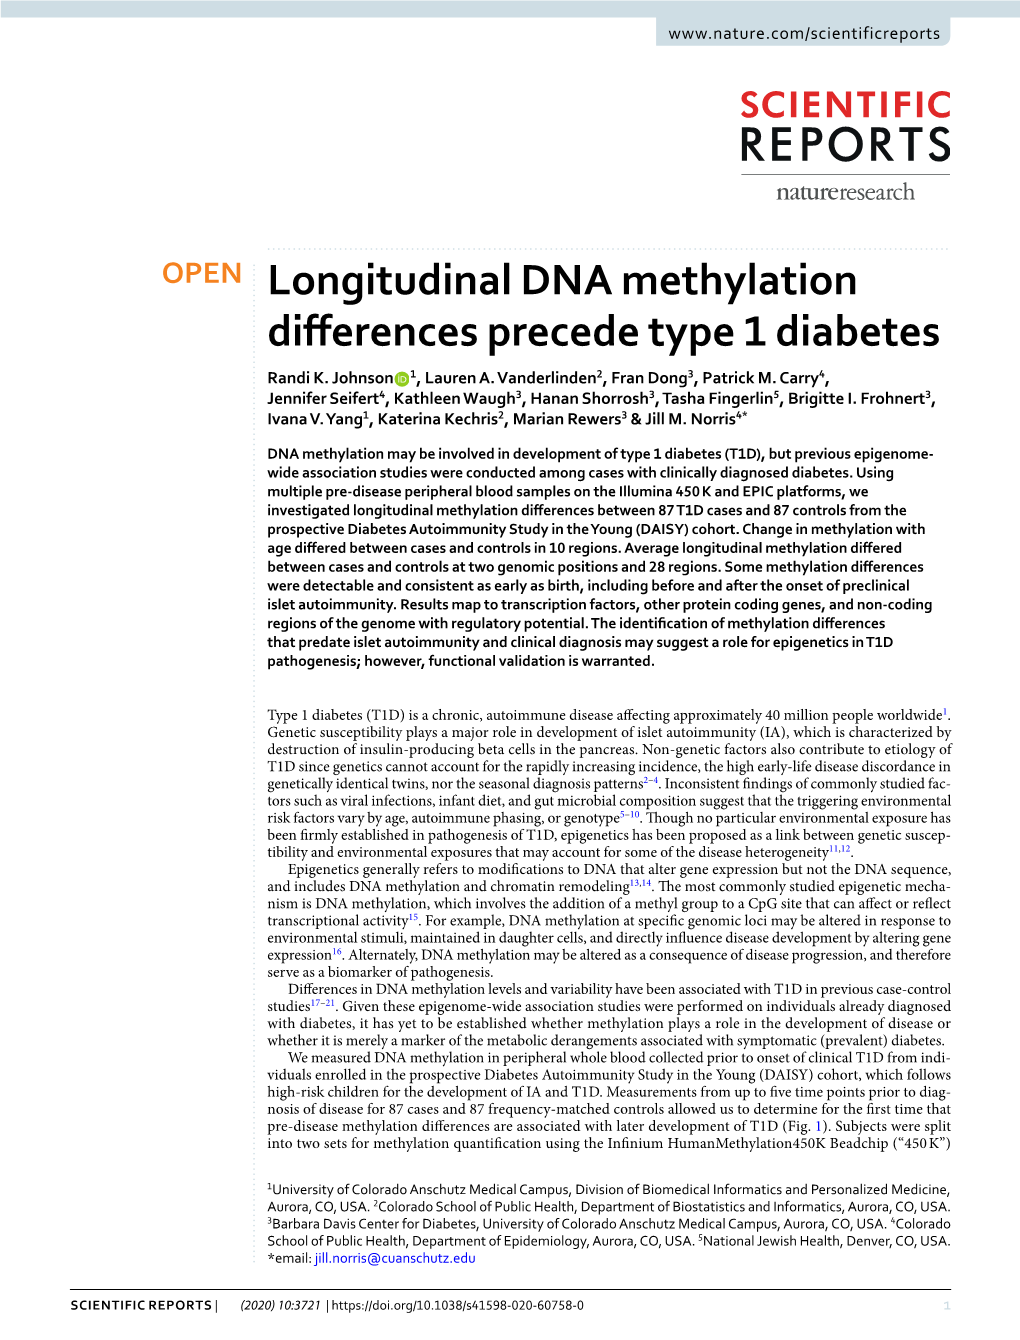 Longitudinal DNA Methylation Differences Precede Type 1 Diabetes